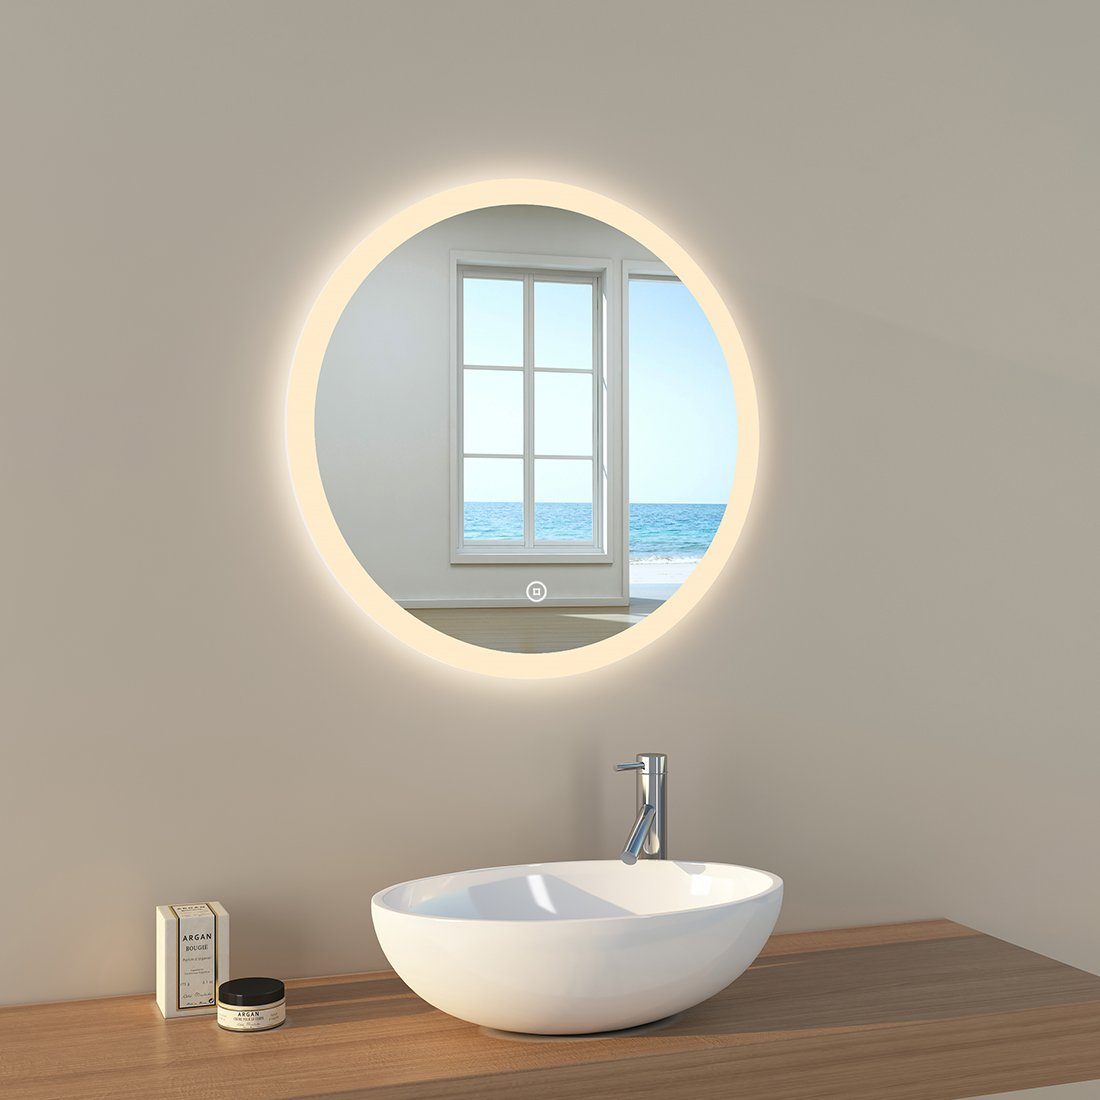 Badspiegel mit Beleuchtung, LED A) Badezimmerspiegel, EMKE Rund EMKE Badspiegel mit Touch-Schalter(Type